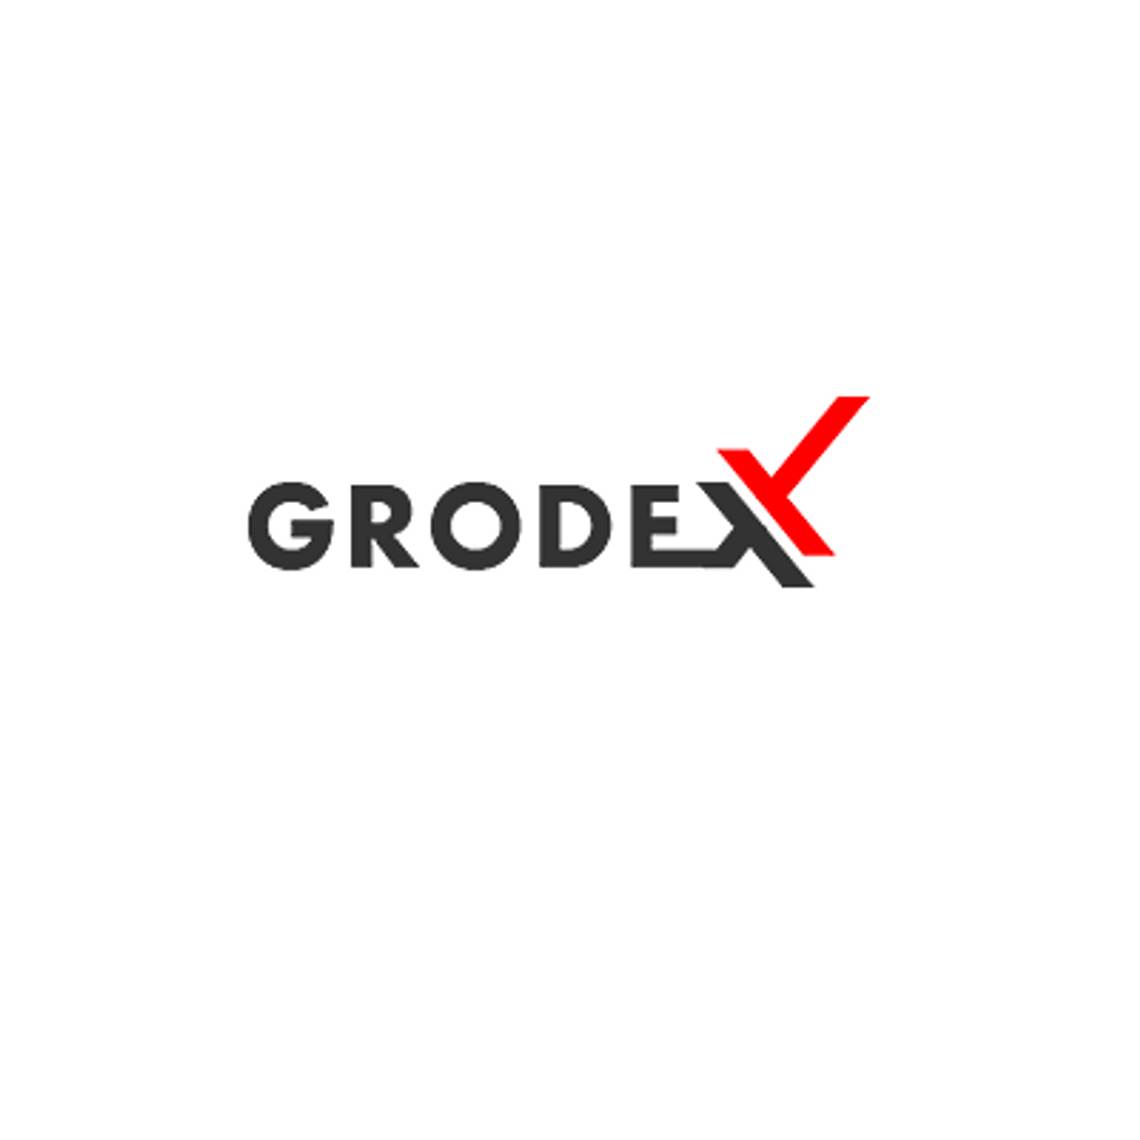 Grodex